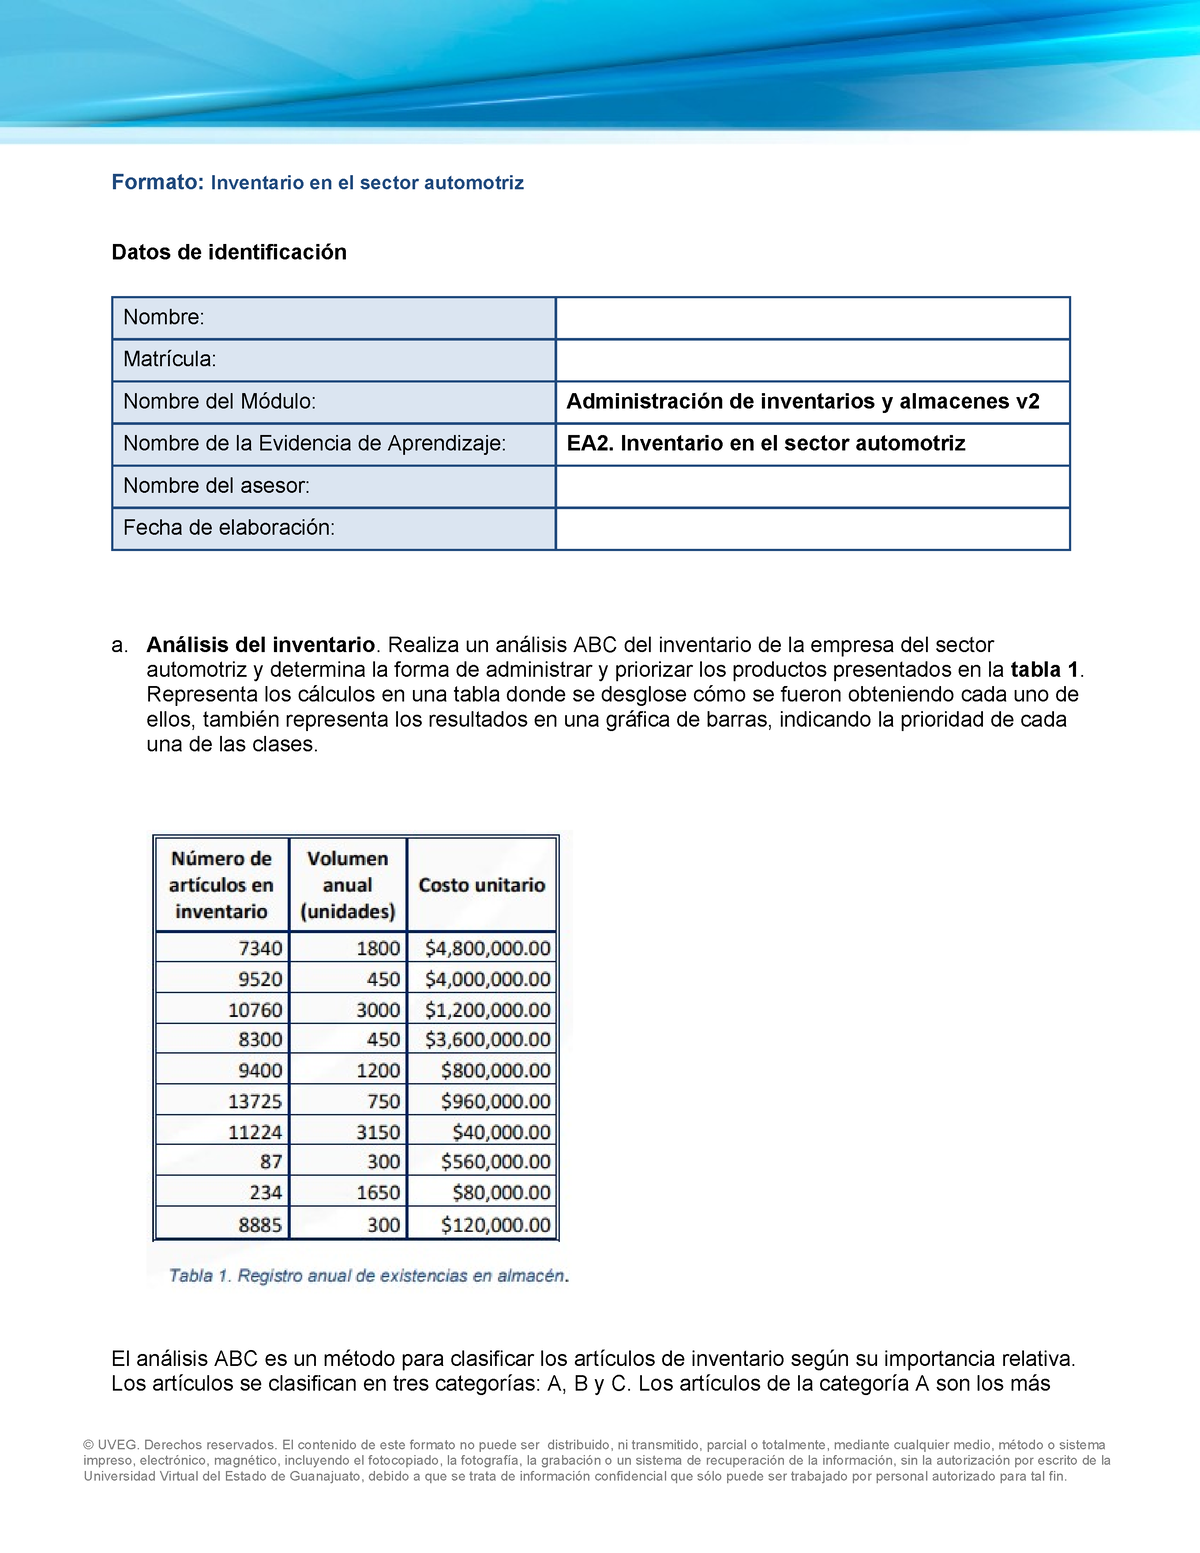 Ea2 Inventario En El Sector Automotriz Formato Inventario En El Sector Automotriz Datos De 9917